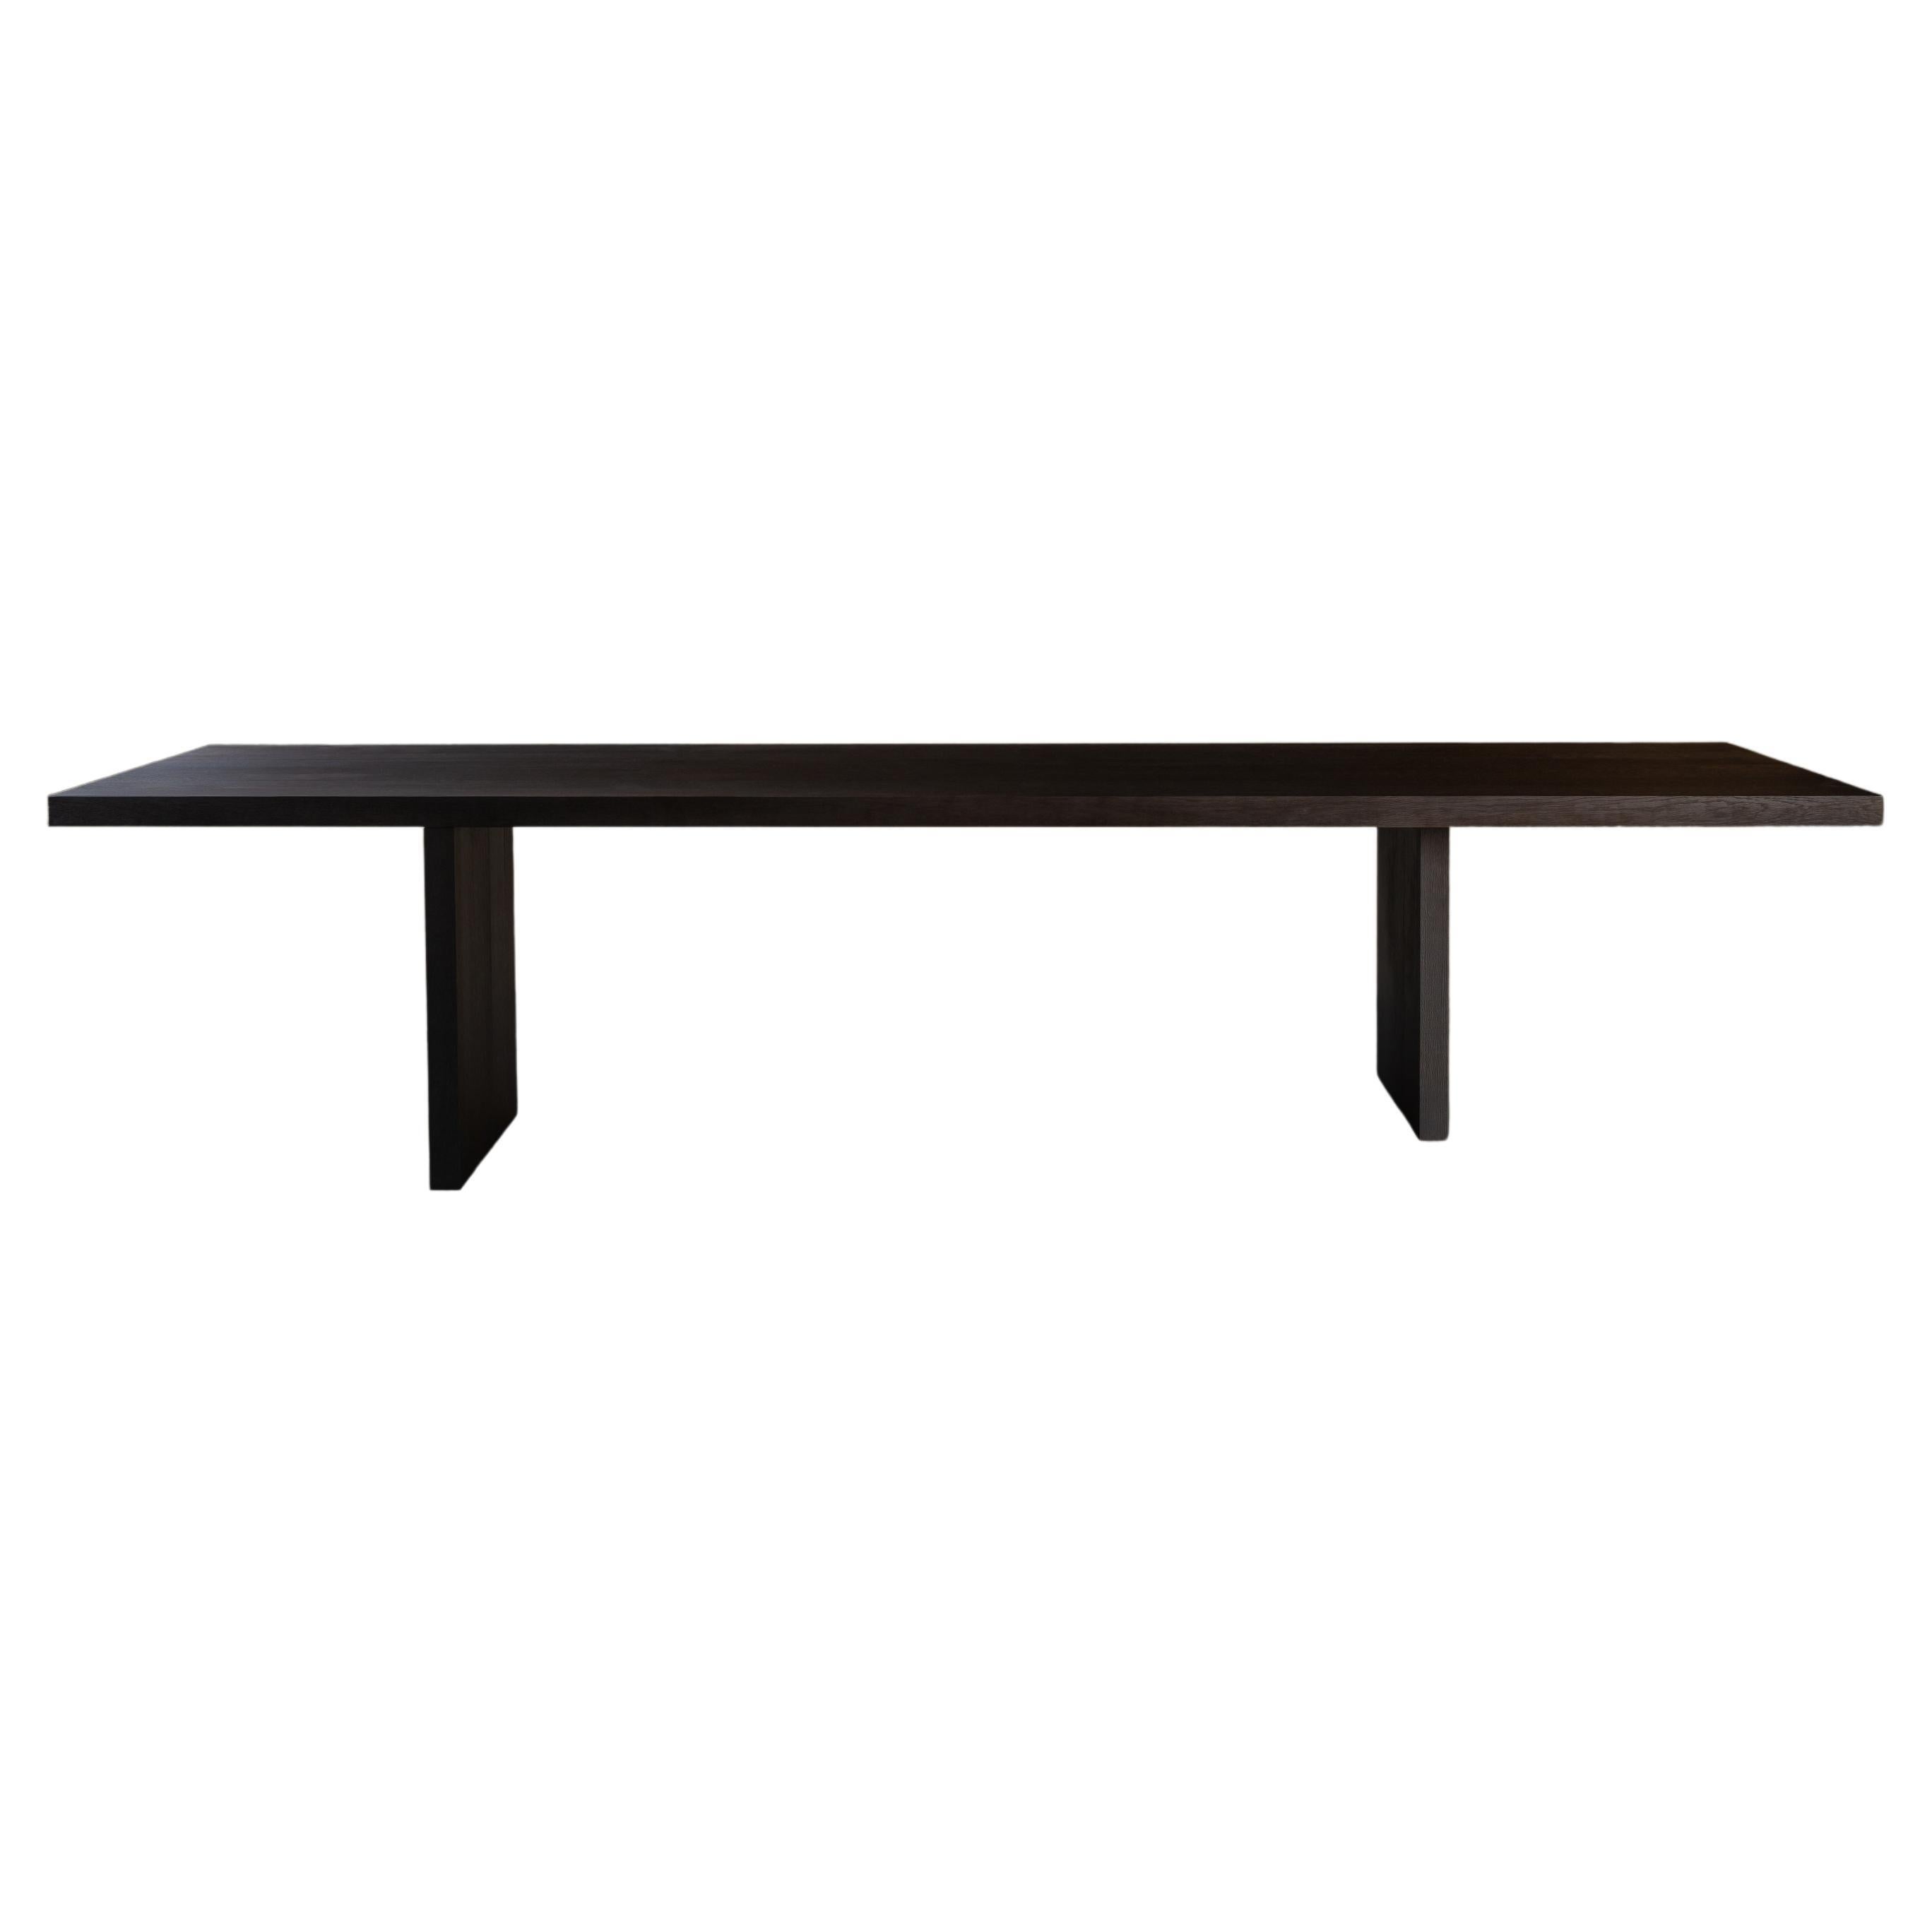 Schwebender Tisch von Kana Objects